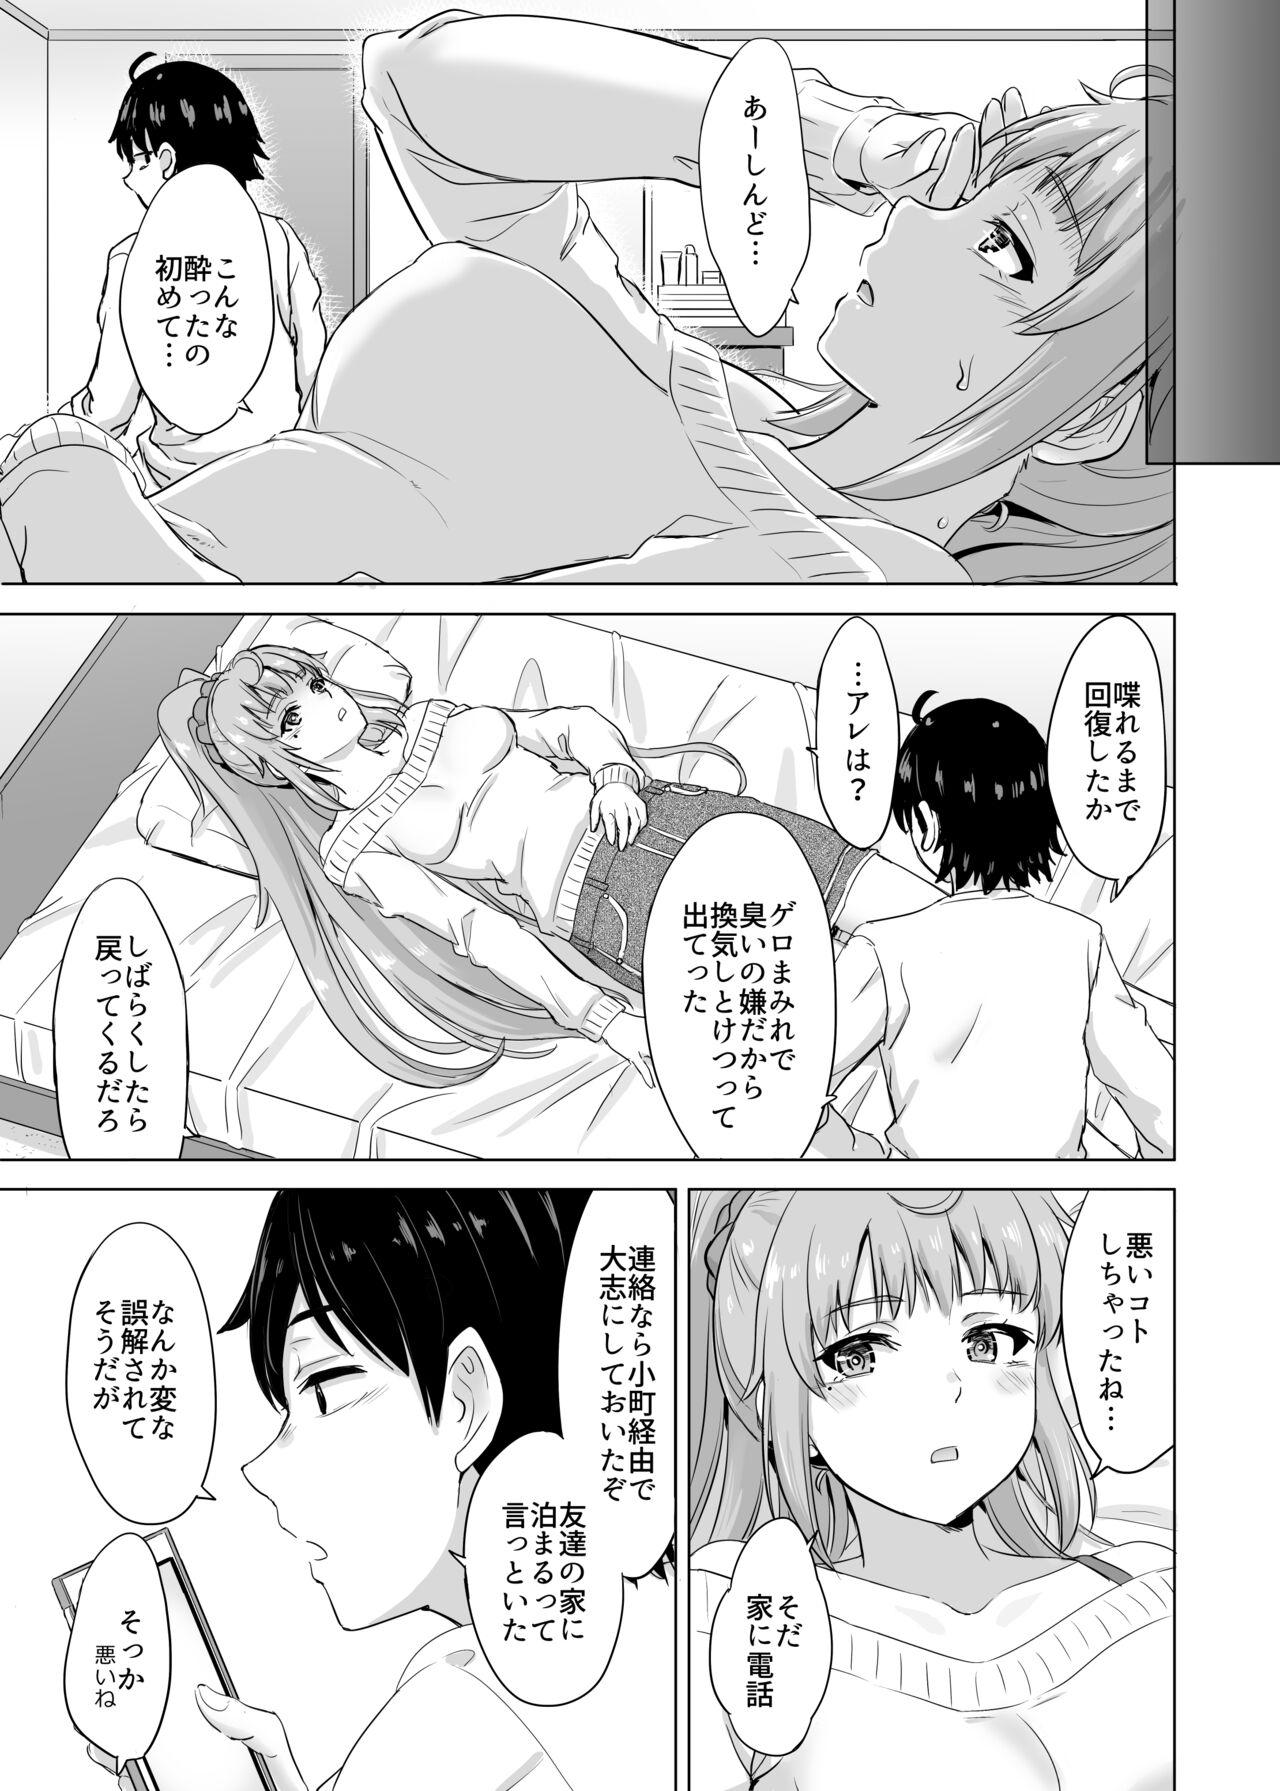 Office Sex Ashi-san Saki Saki Manga - Yahari ore no seishun love come wa machigatteiru Gay Public - Page 3